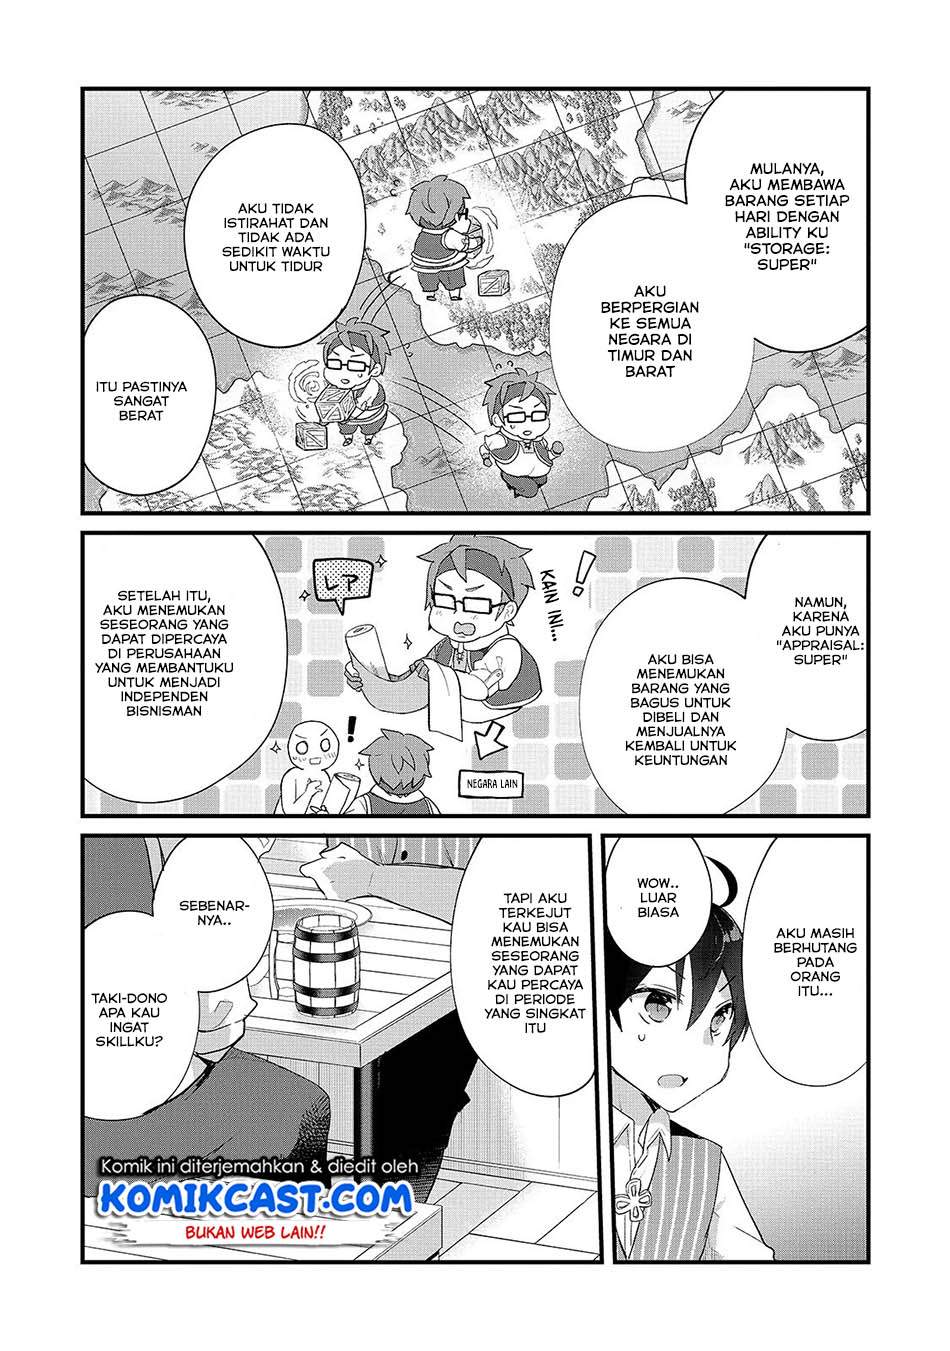 Shinja Zero no Megami-sama to Hajimeru Isekai Kouryaku Chapter 03.1 Bahasa Indonesia